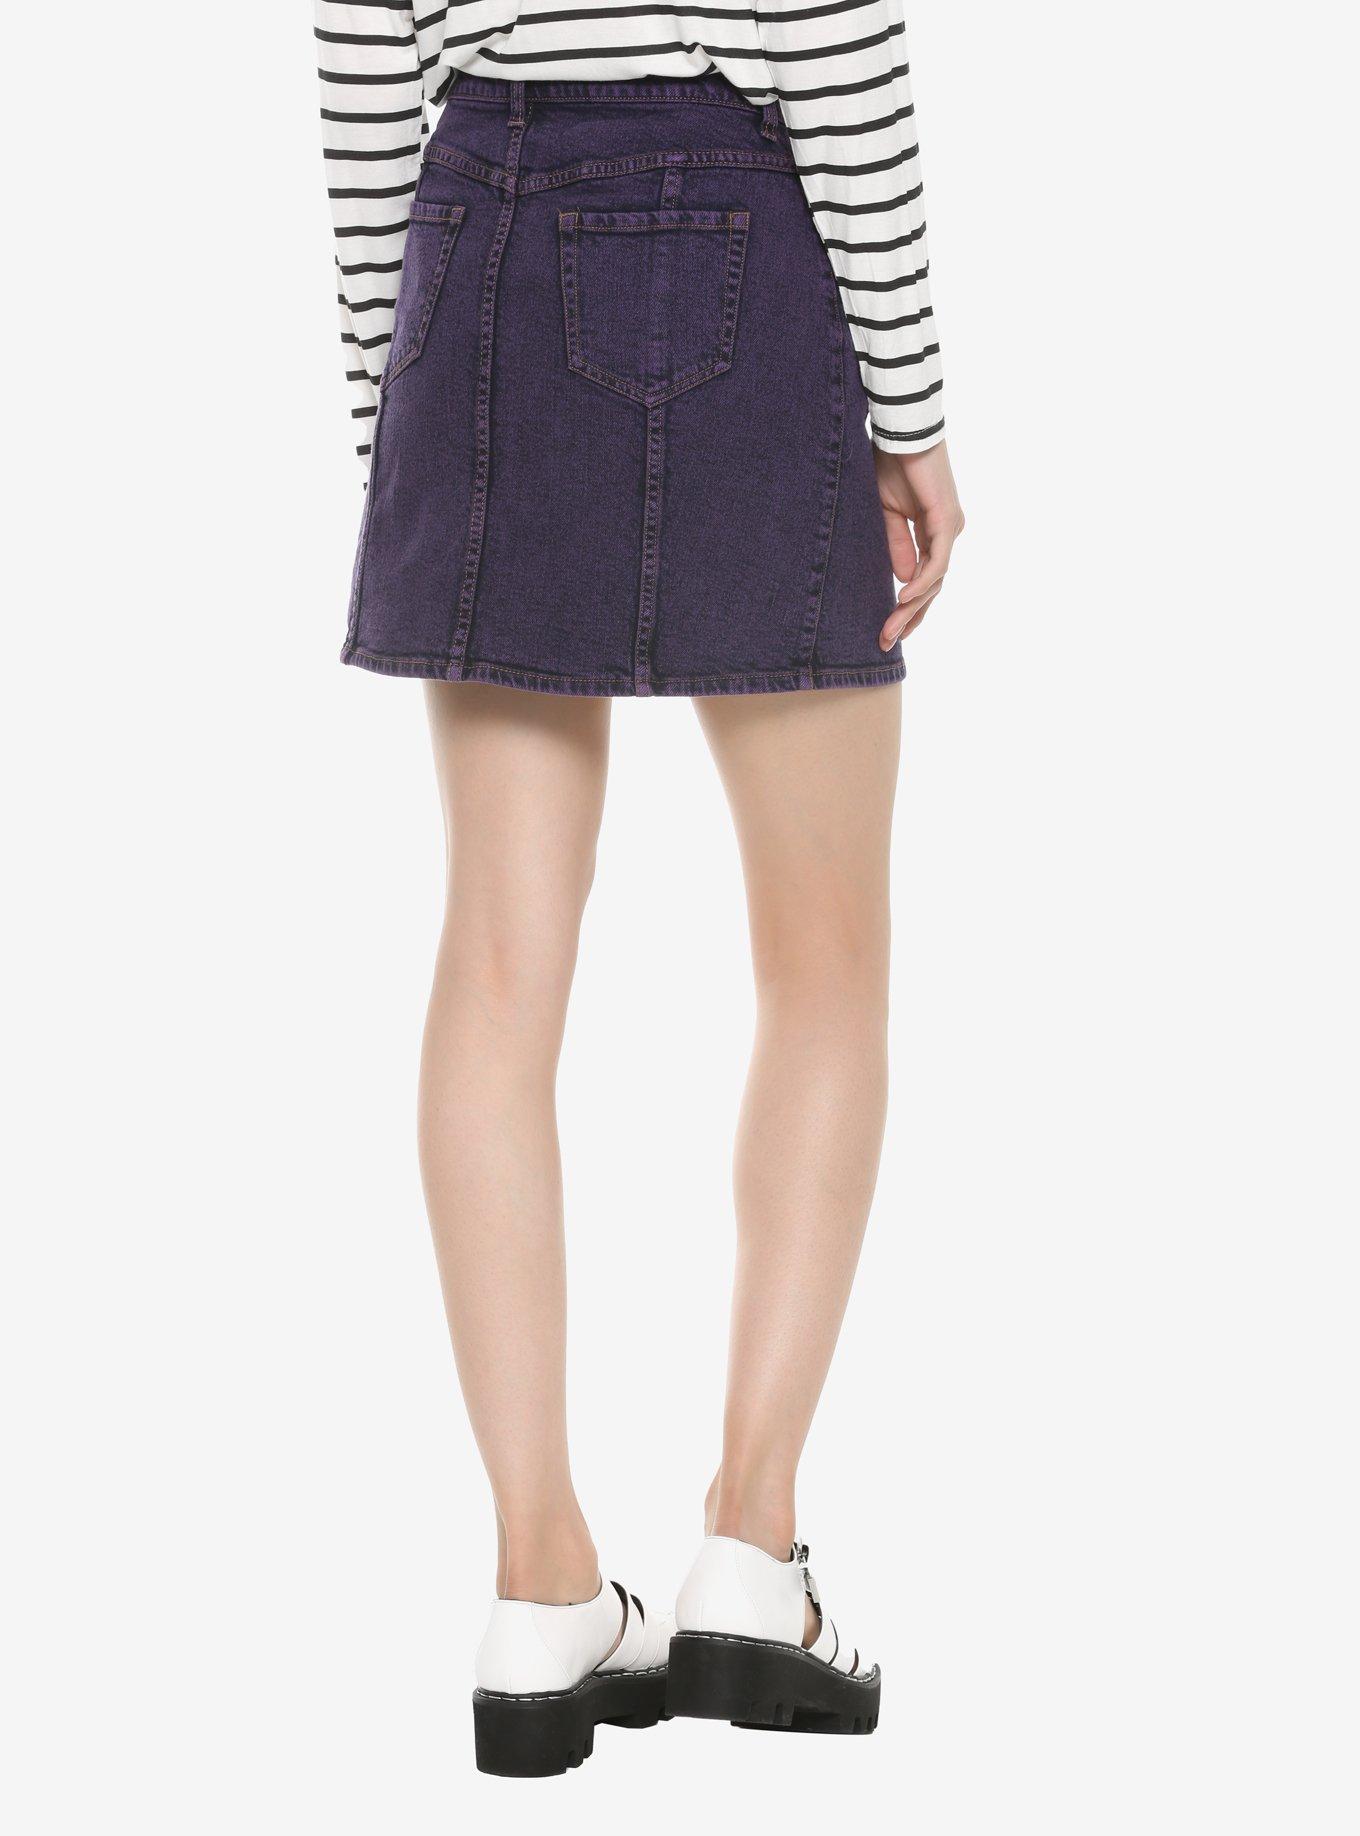 Purple Acid Wash Denim Skirt, PURPLE, alternate